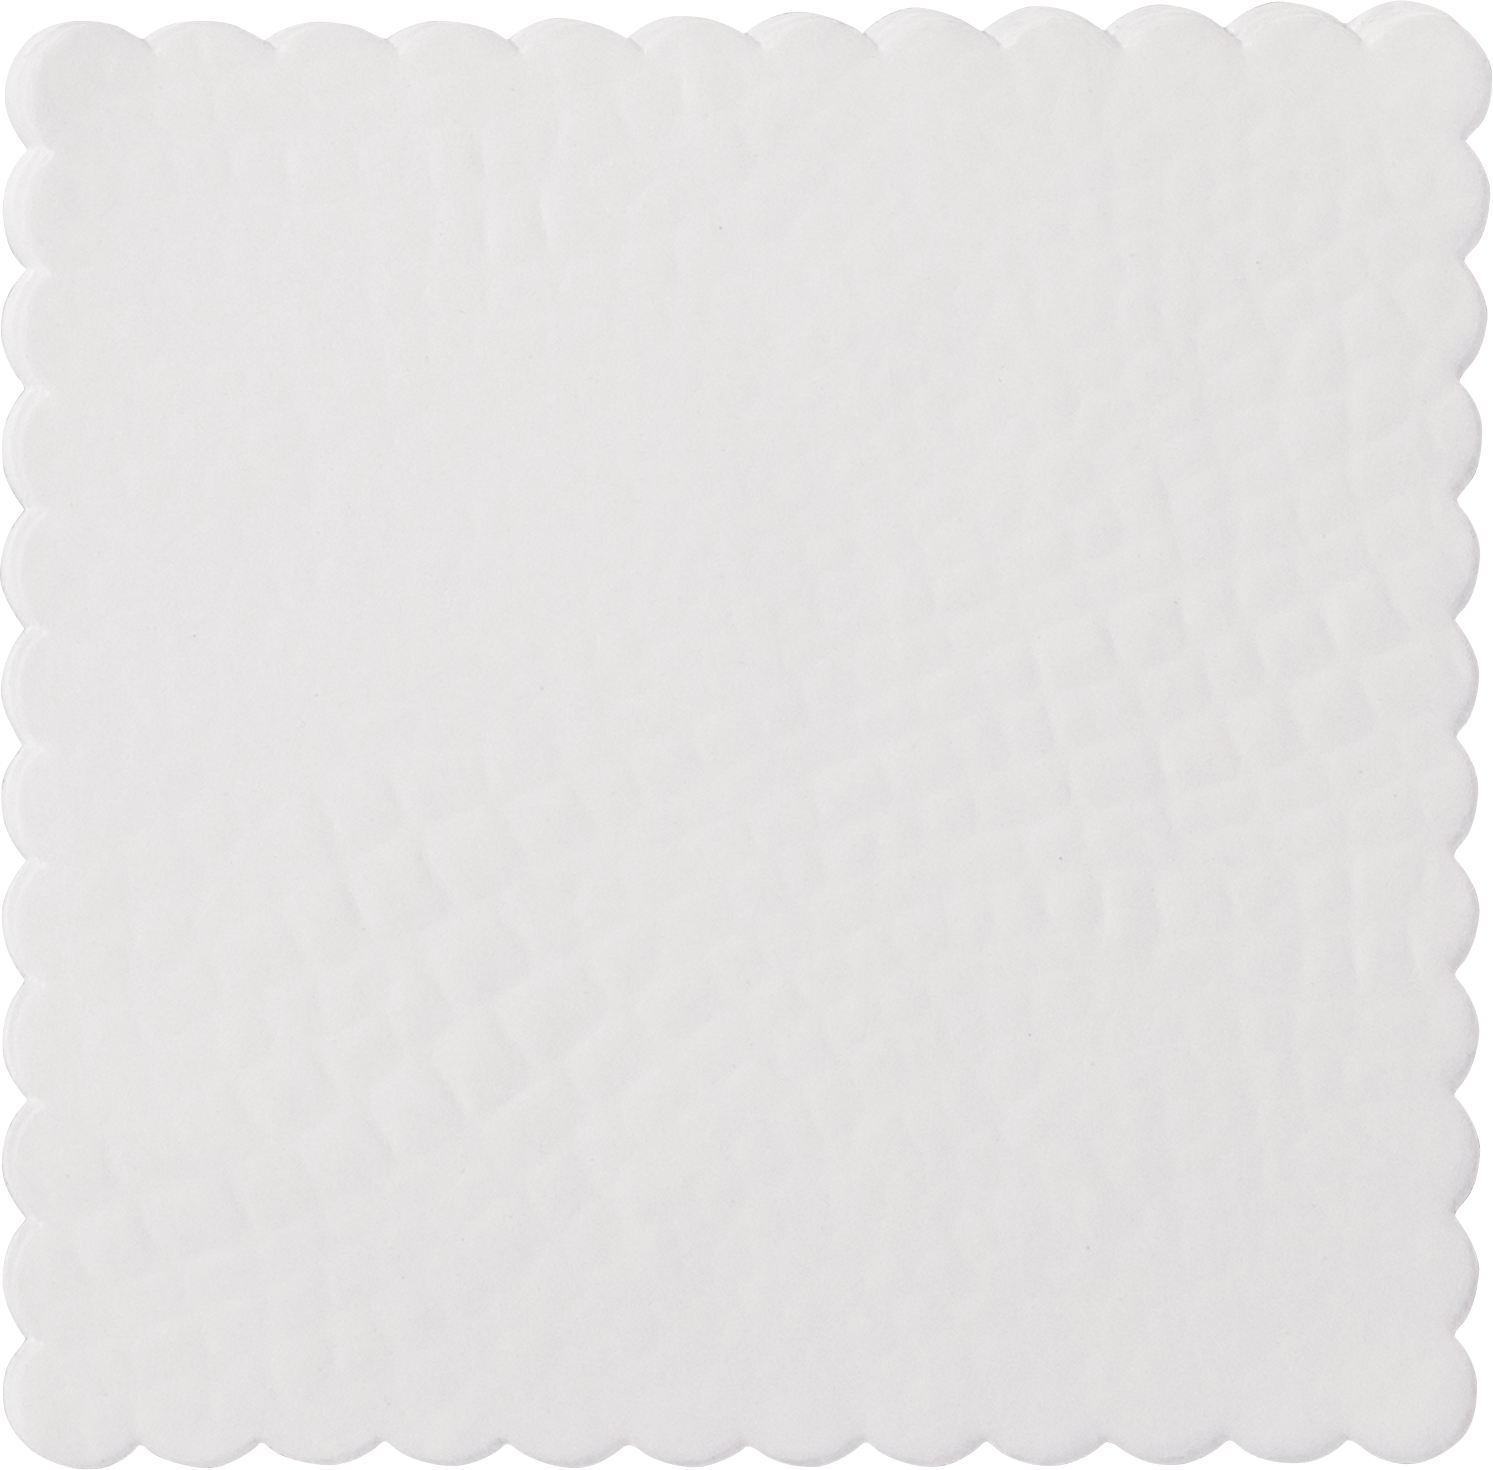 Croco dish paper square, 15 x 15cm